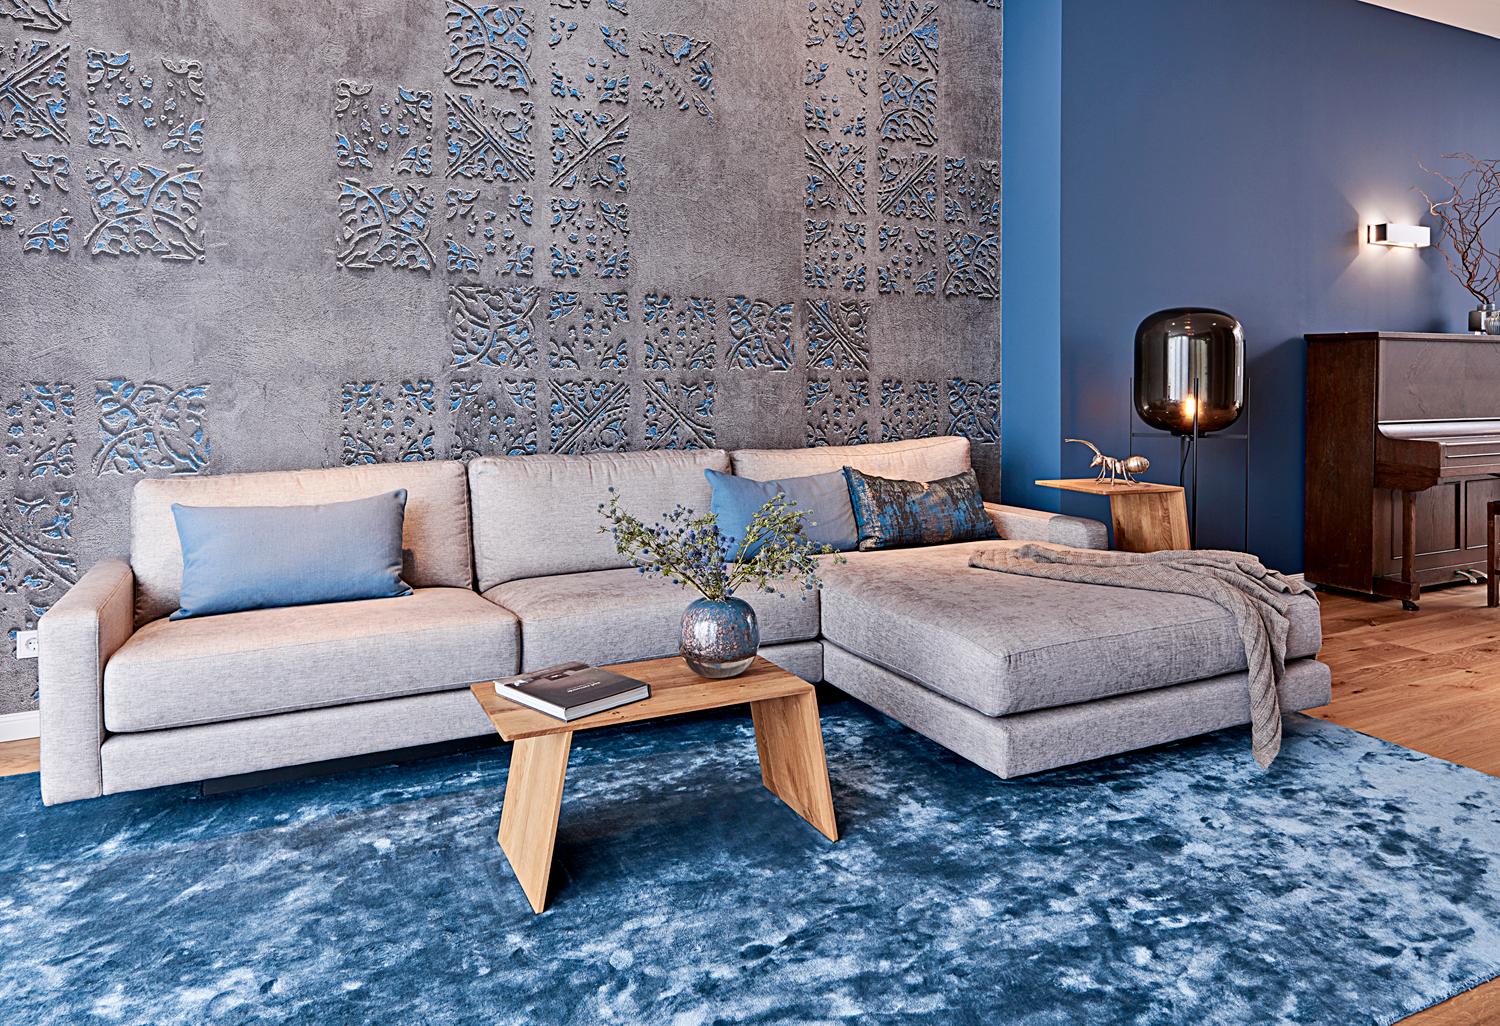 Sofa vor Wandtapete von Wall & Deco #wandtapete ©Michael Pfeiffer Fotografie